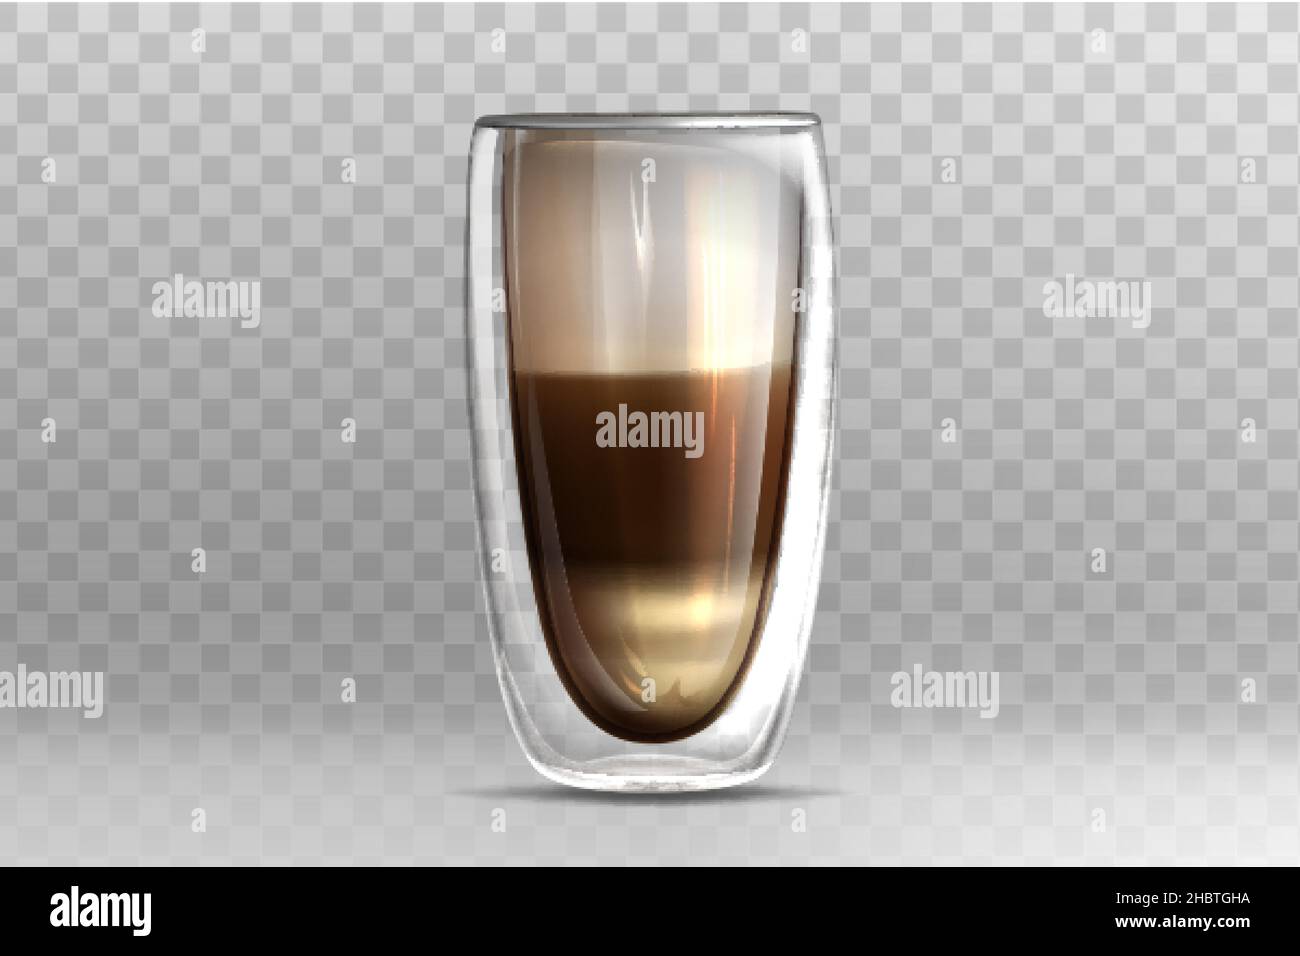 Illustration vectorielle réaliste du café dans une tasse en verre avec double paroi sur fond transparent.Cappuccino ou latte avec mousse de lait sur le dessus.Modèle de maquette pour le marquage ou la conception de produits. Illustration de Vecteur